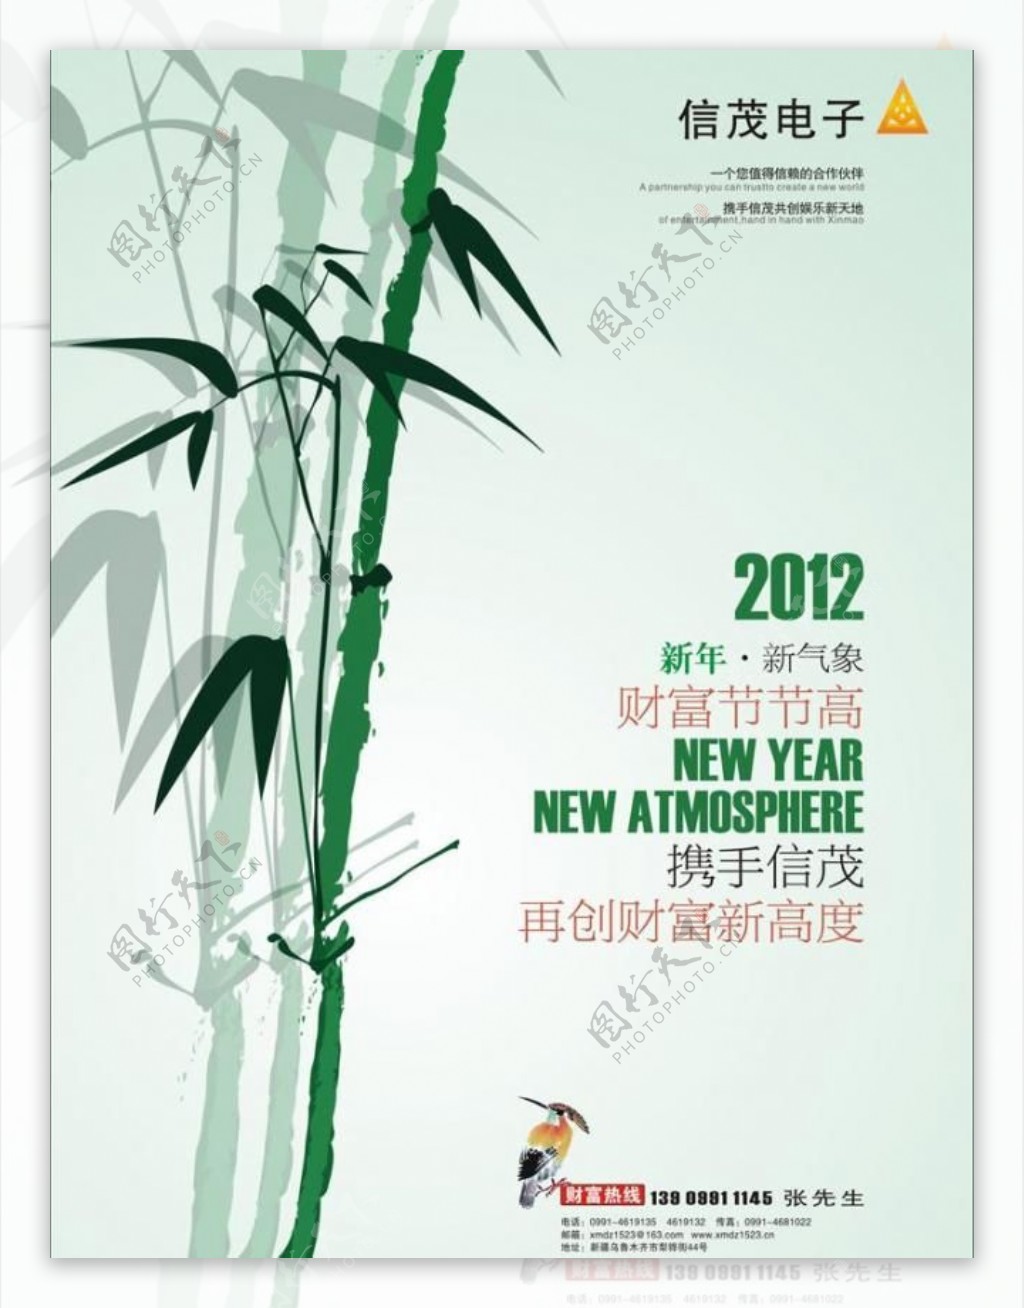 贺年节节高升绿竹子篇图片